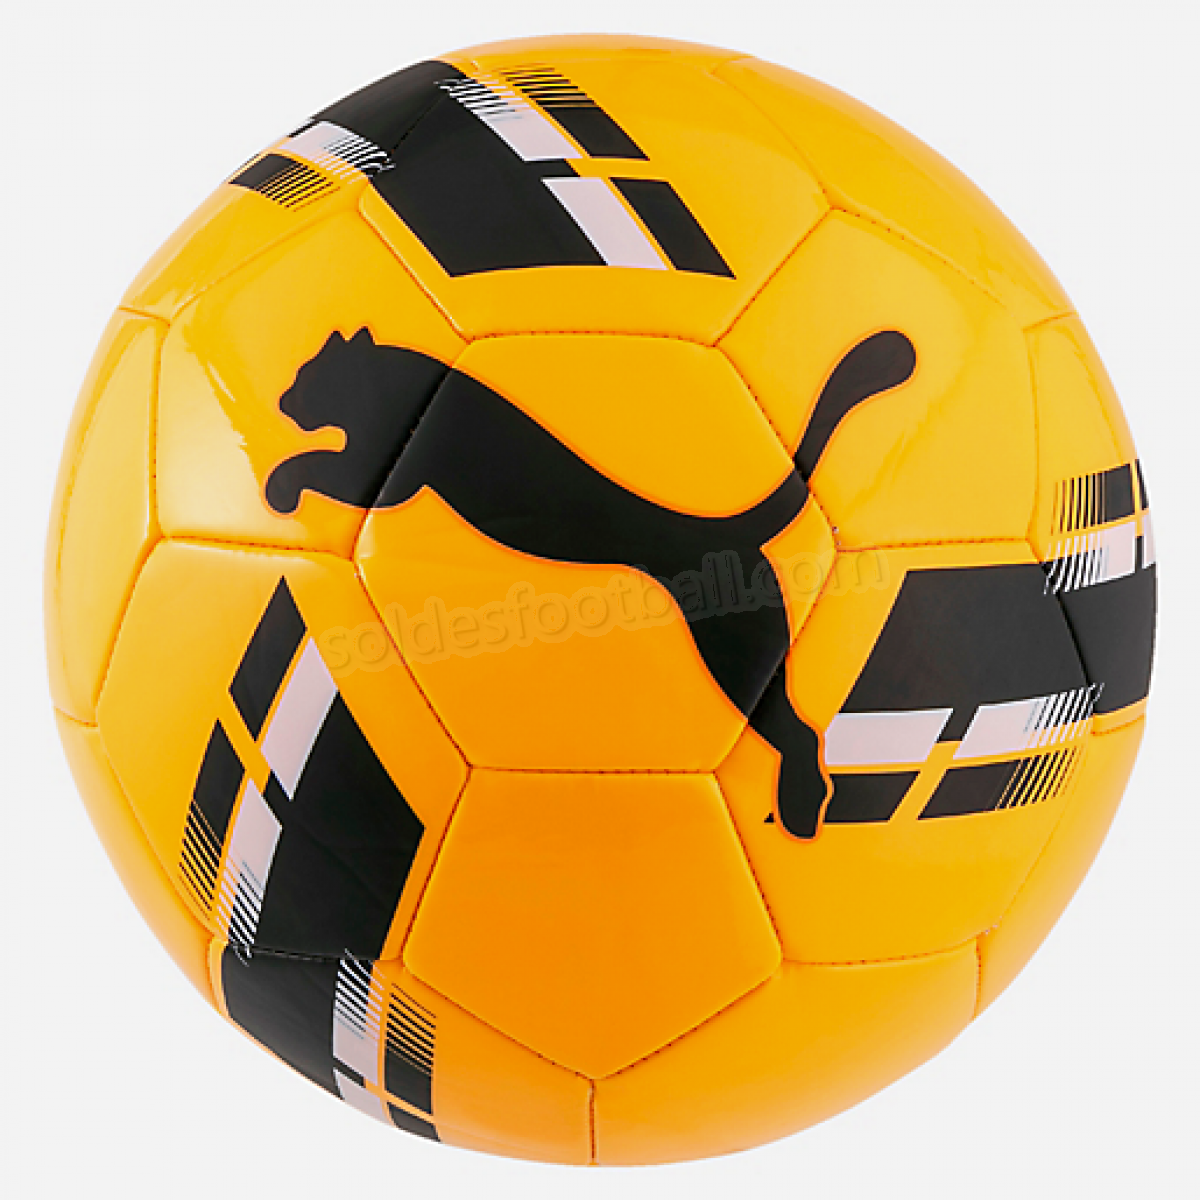 Ballon football Puma Shock Ball-PUMA en solde - Ballon football Puma Shock Ball-PUMA en solde